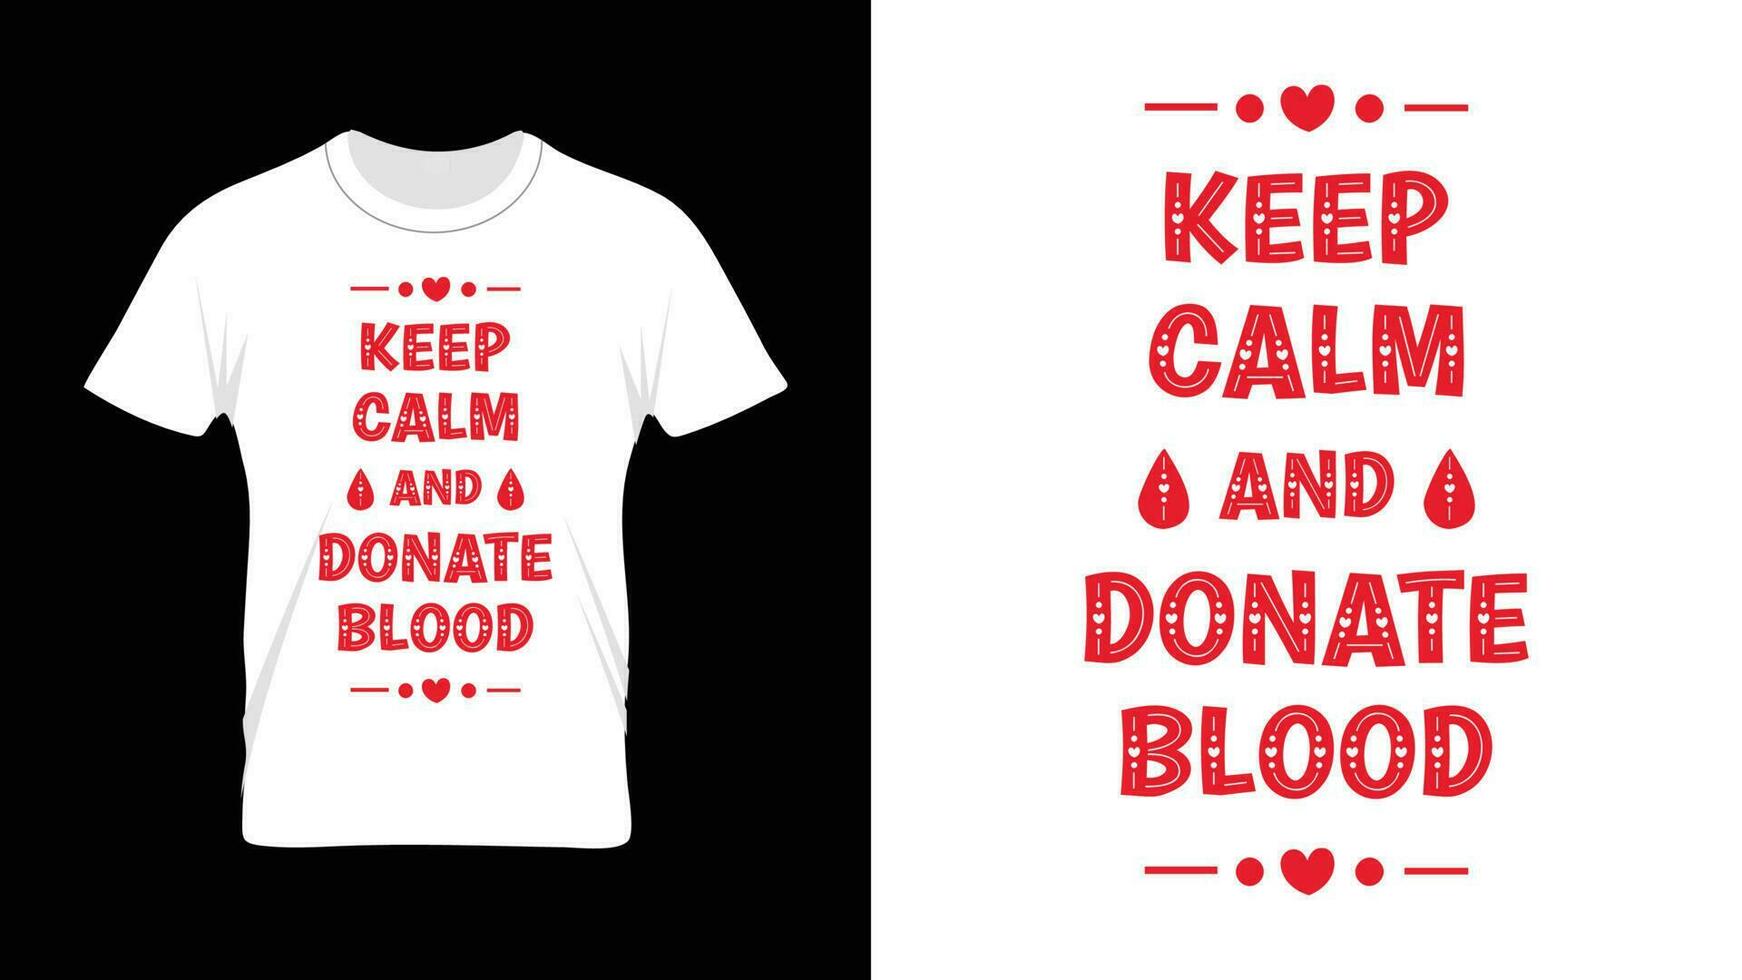 houden kalmte en schenken bloed - wereld bloed schenker dag t-shirt ontwerp vector